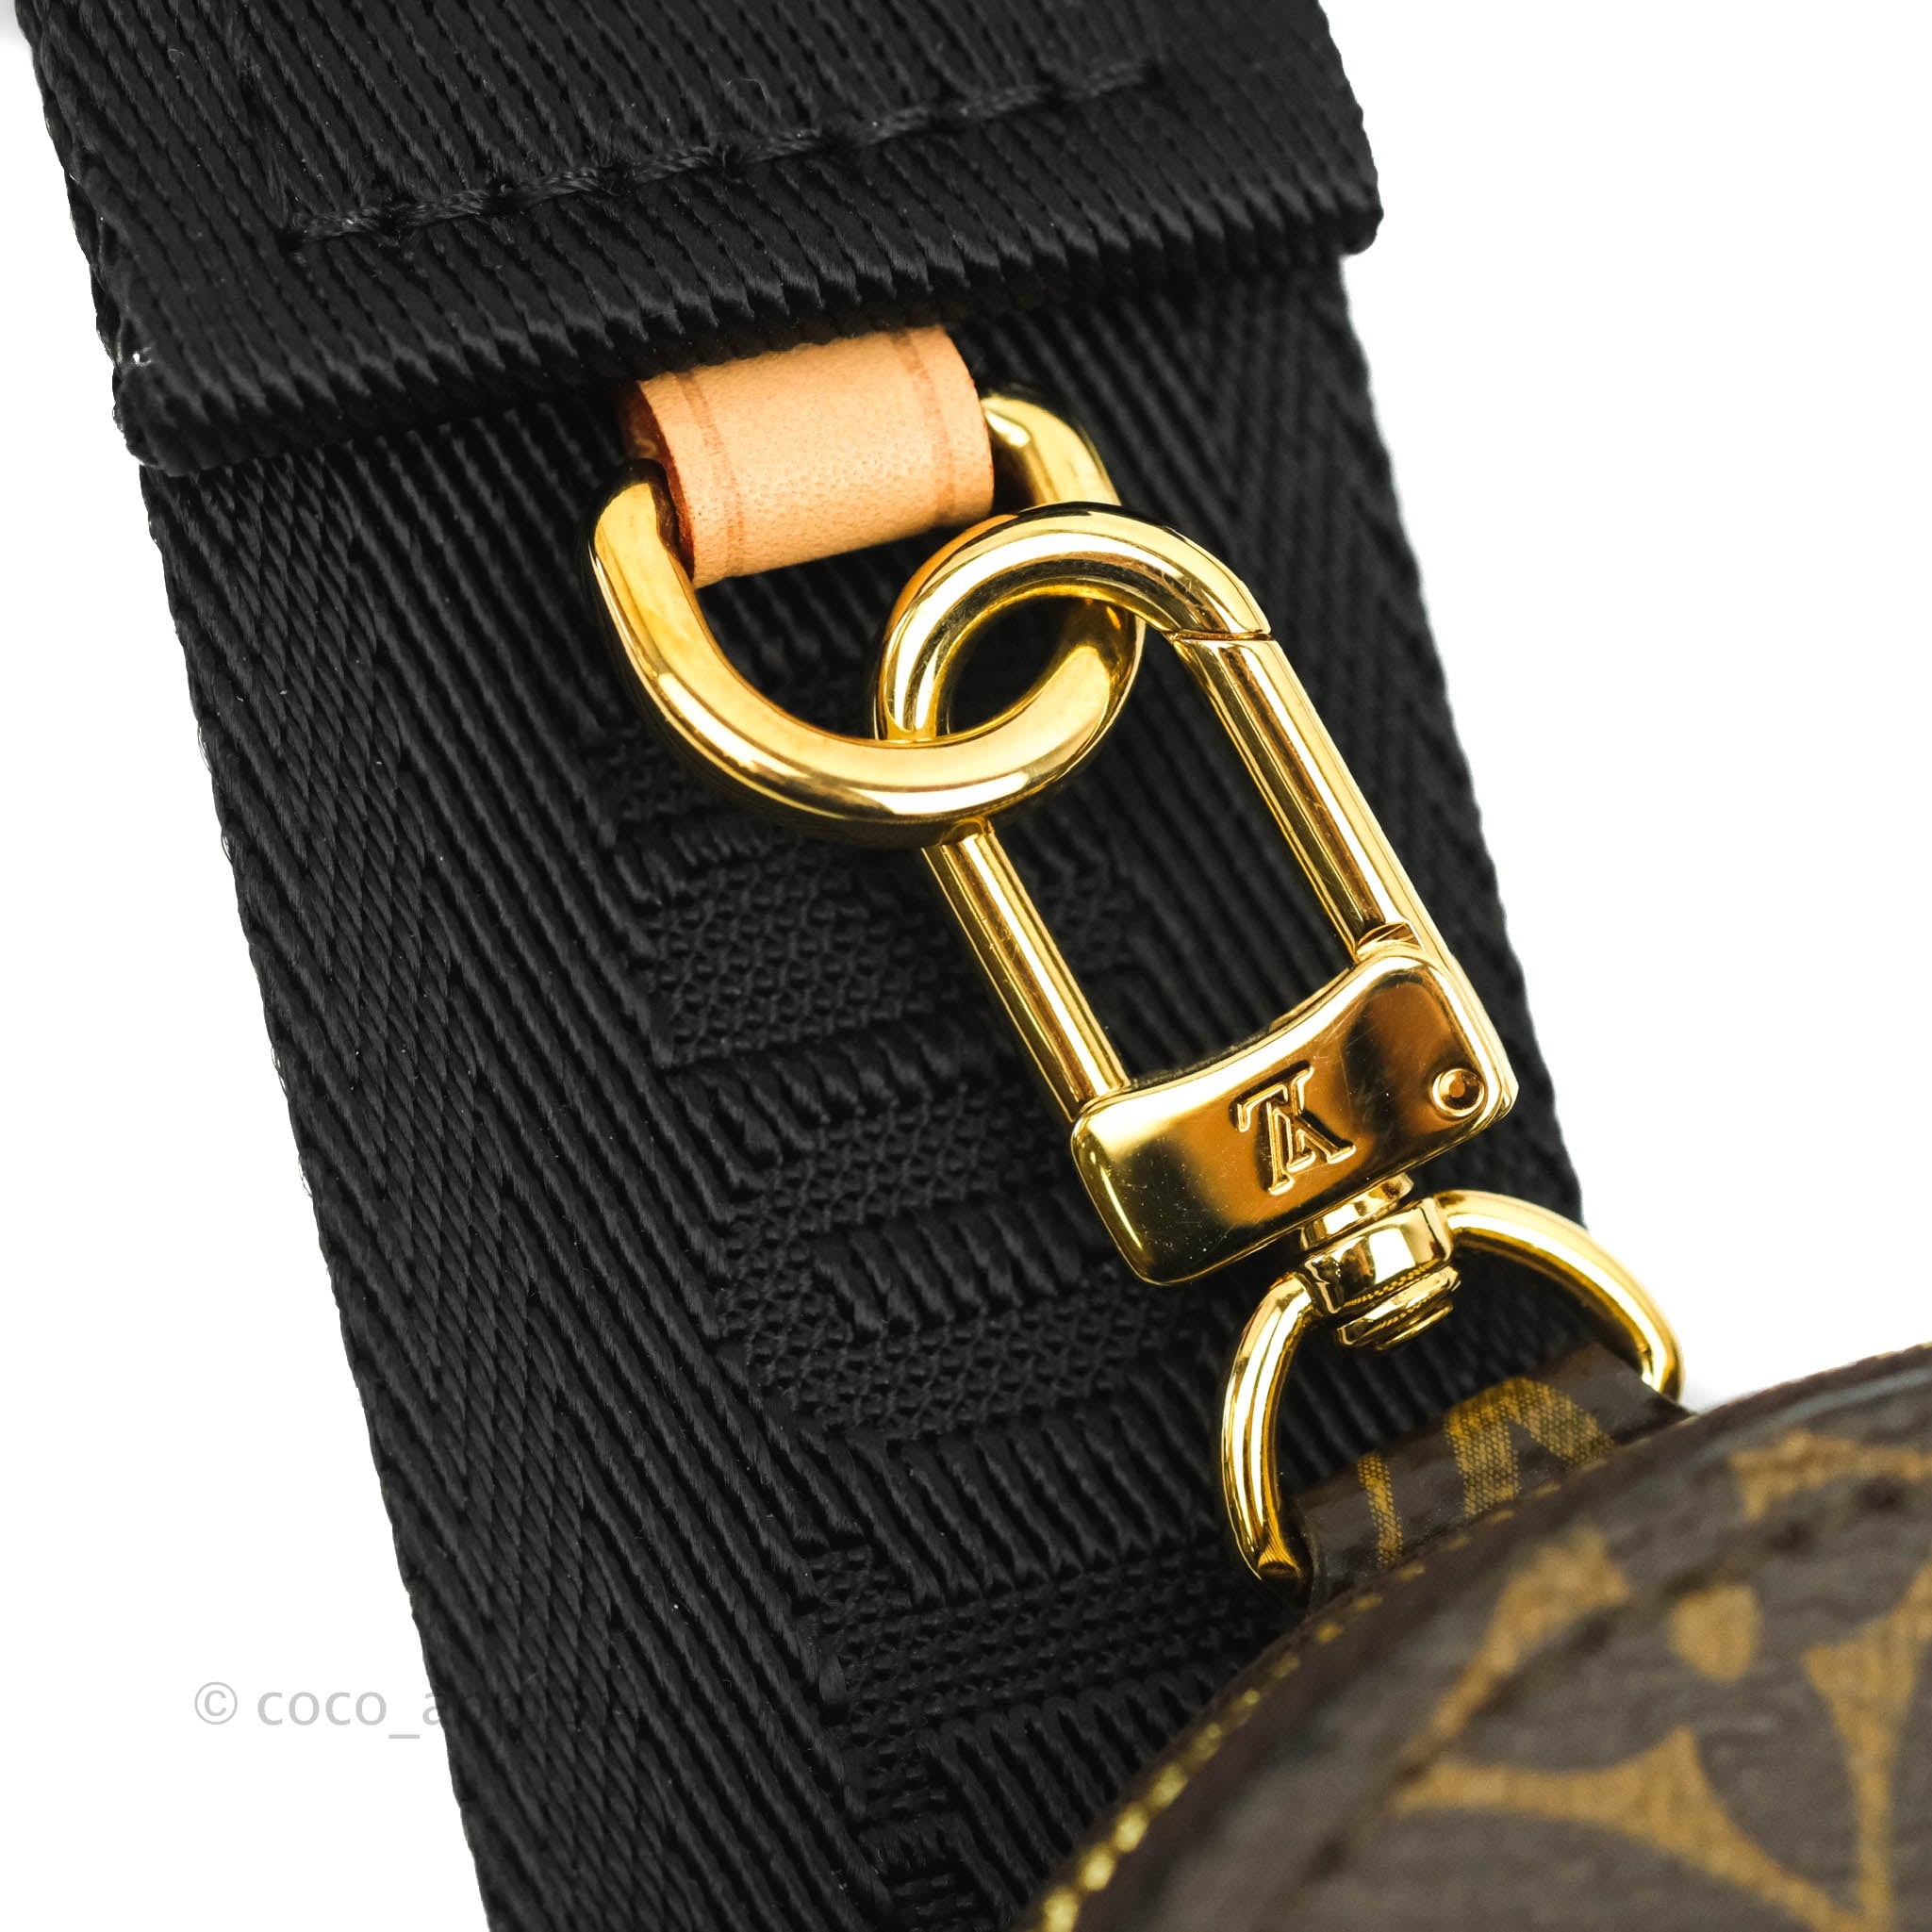 Sold at Auction: Louis Vuitton Mens Belt